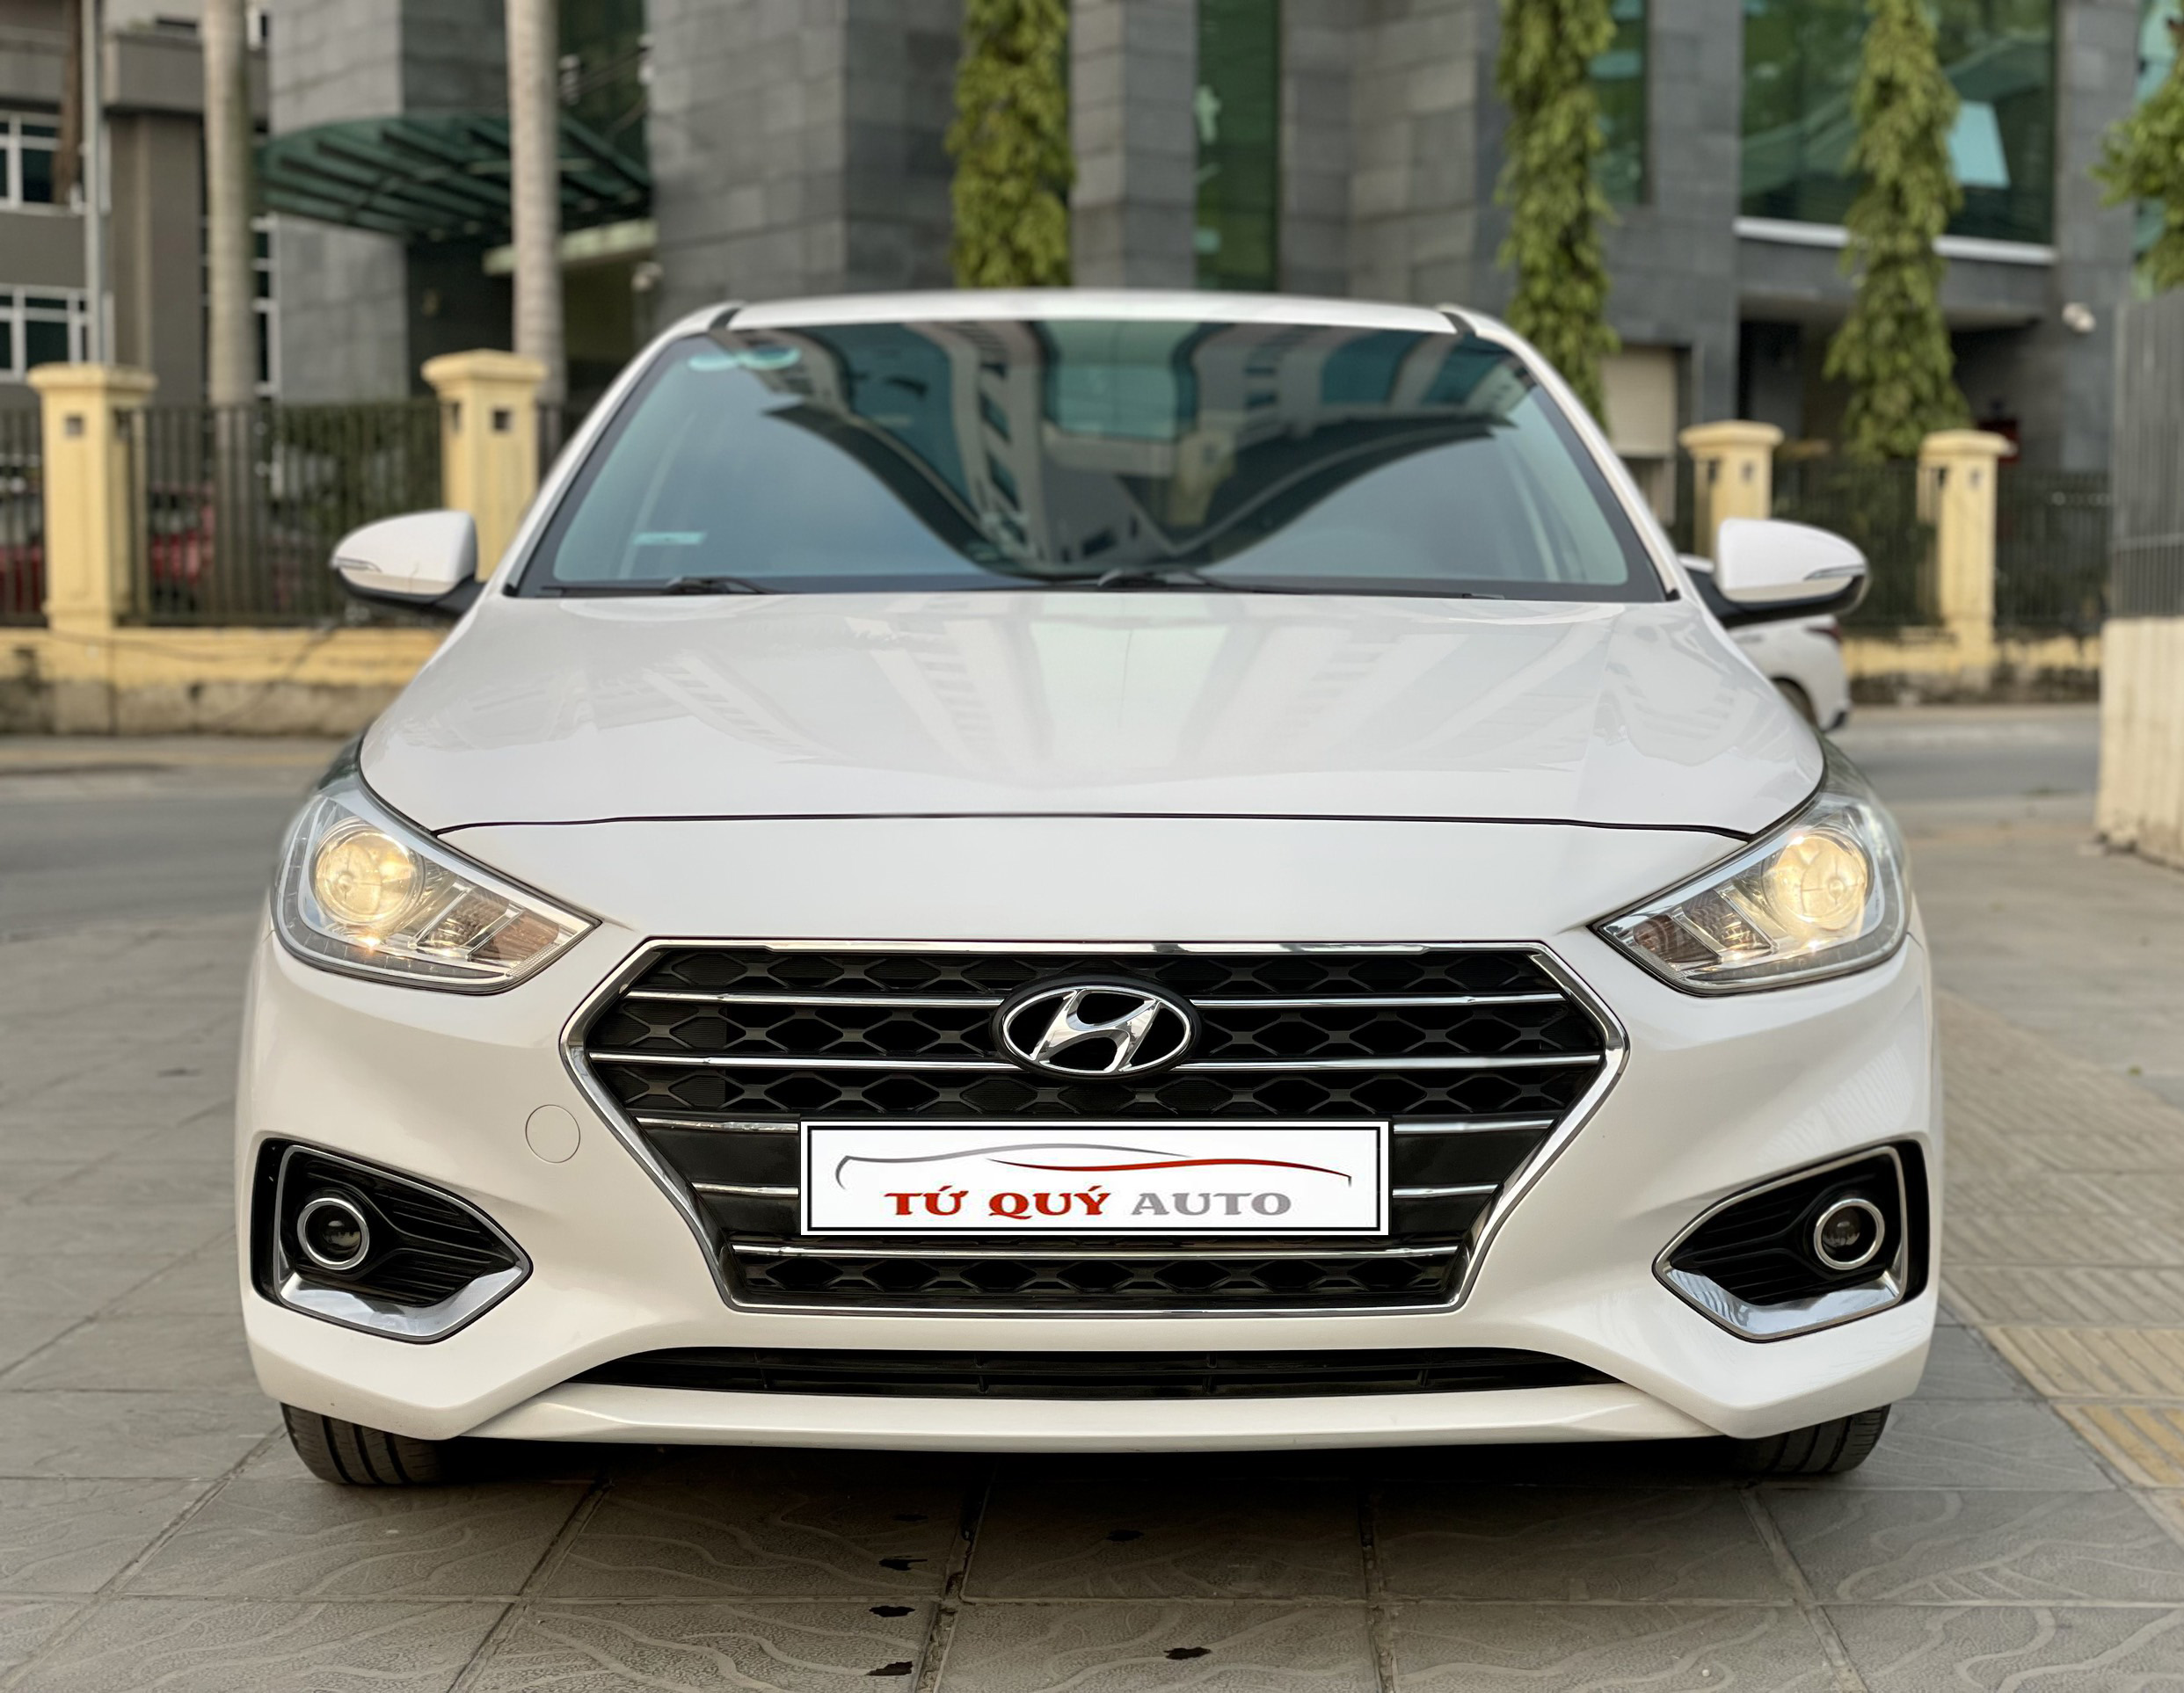 Xe Hyundai Accent 1.4AT 2019 - Trắng